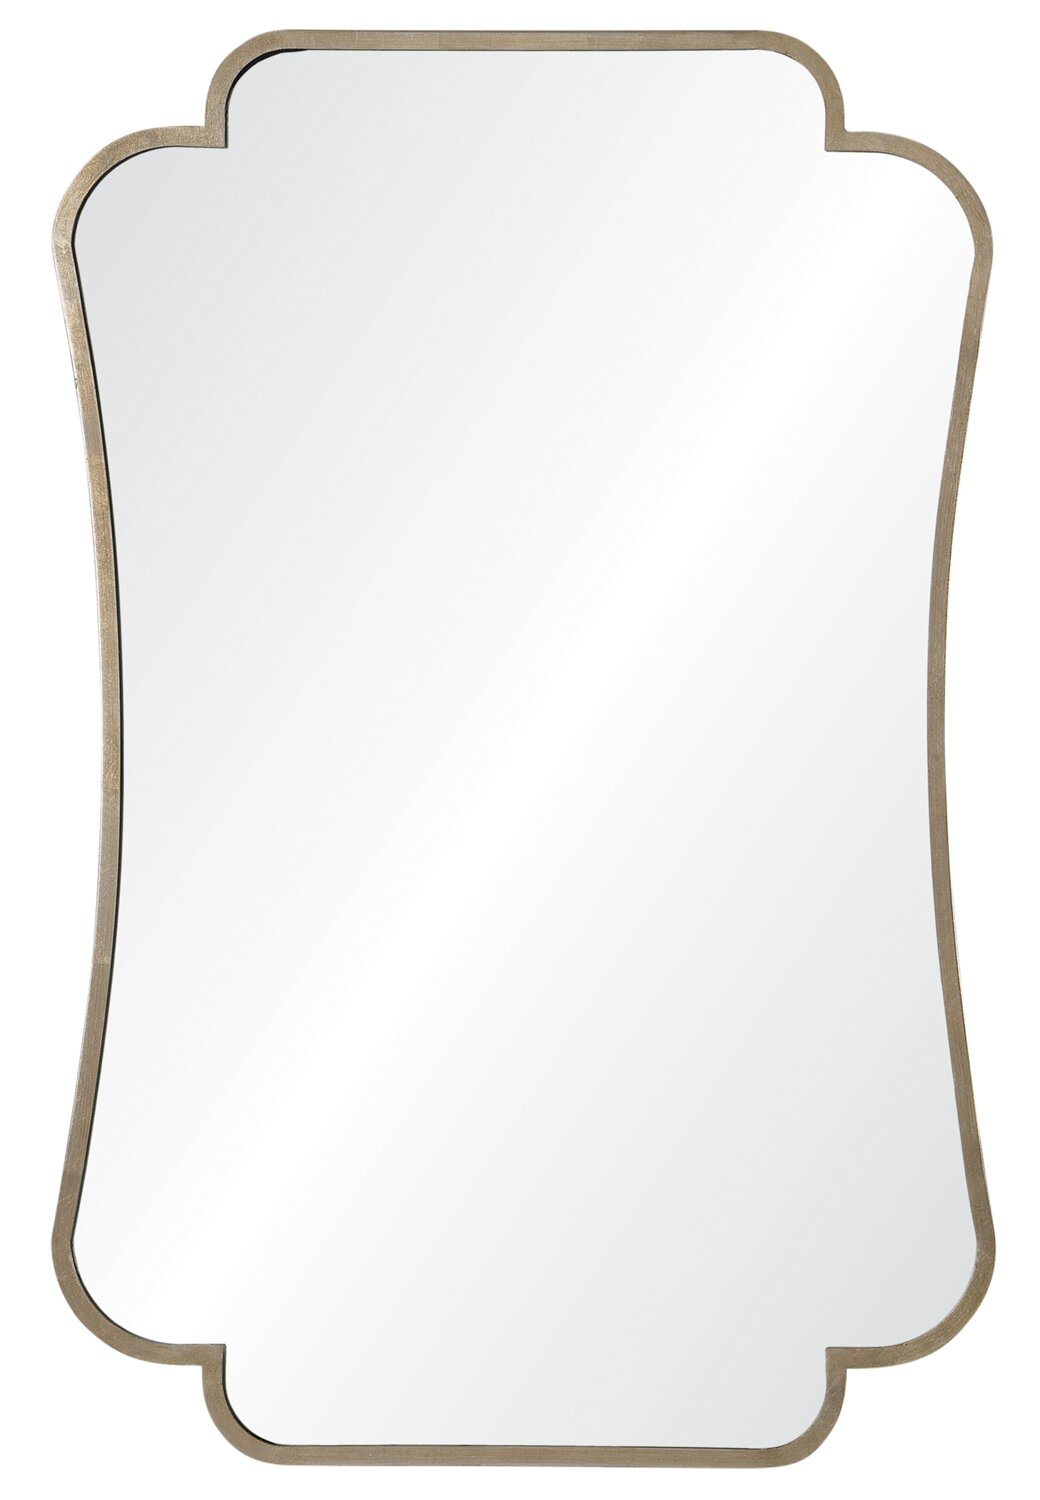 Оригинальное зеркало в форме листа шампанского